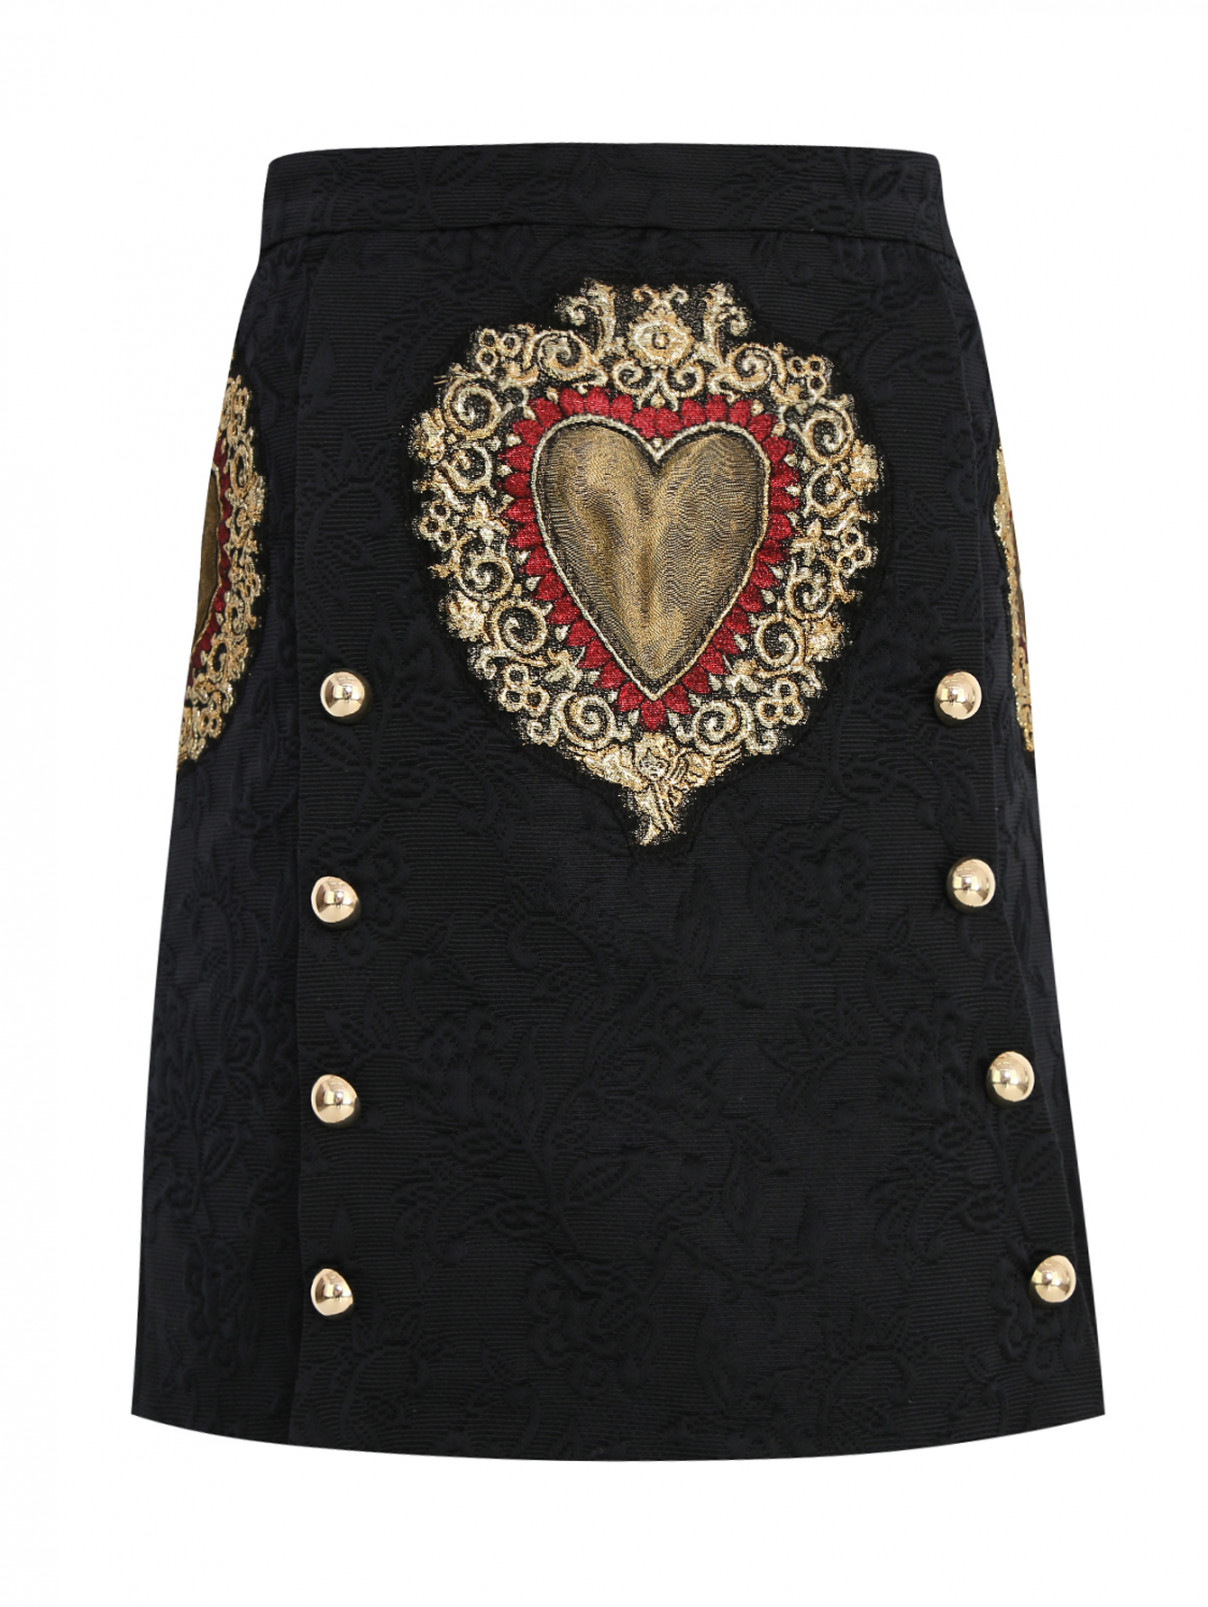 Юбка жаккардовая с аппликацией Dolce & Gabbana  –  Общий вид  – Цвет:  Черный